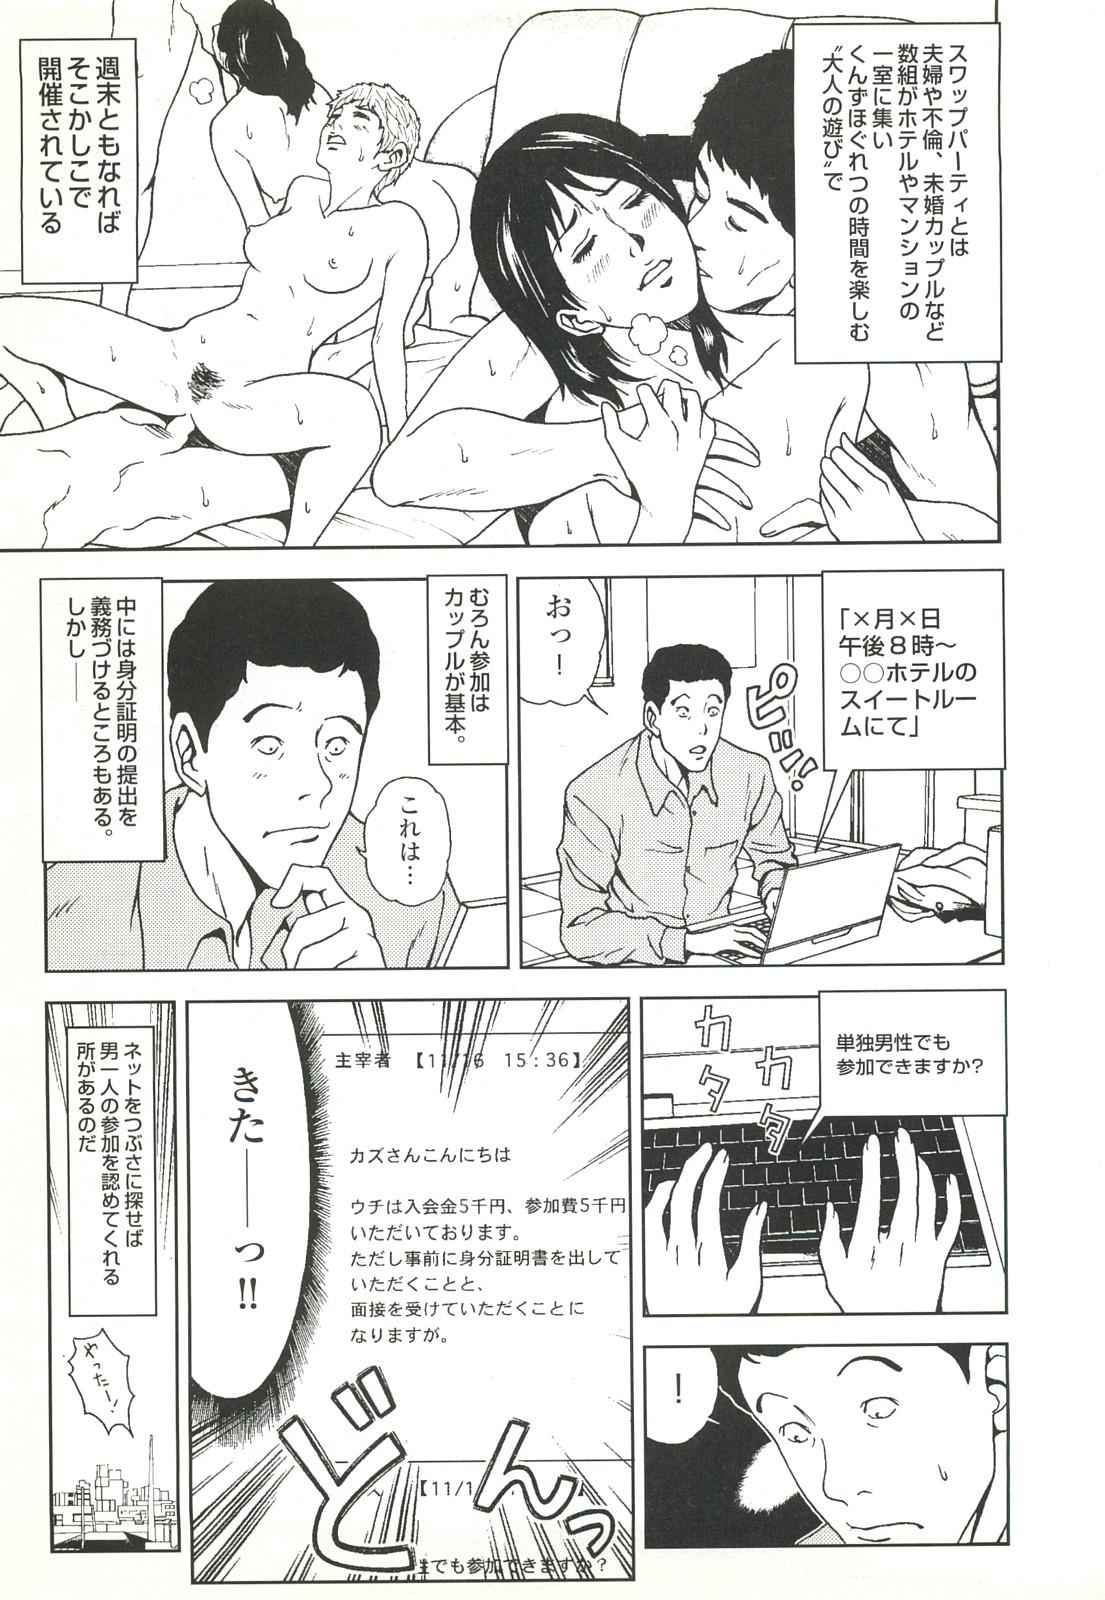 コミック裏モノJAPAN Vol.18 今井のりたつスペシャル号 58